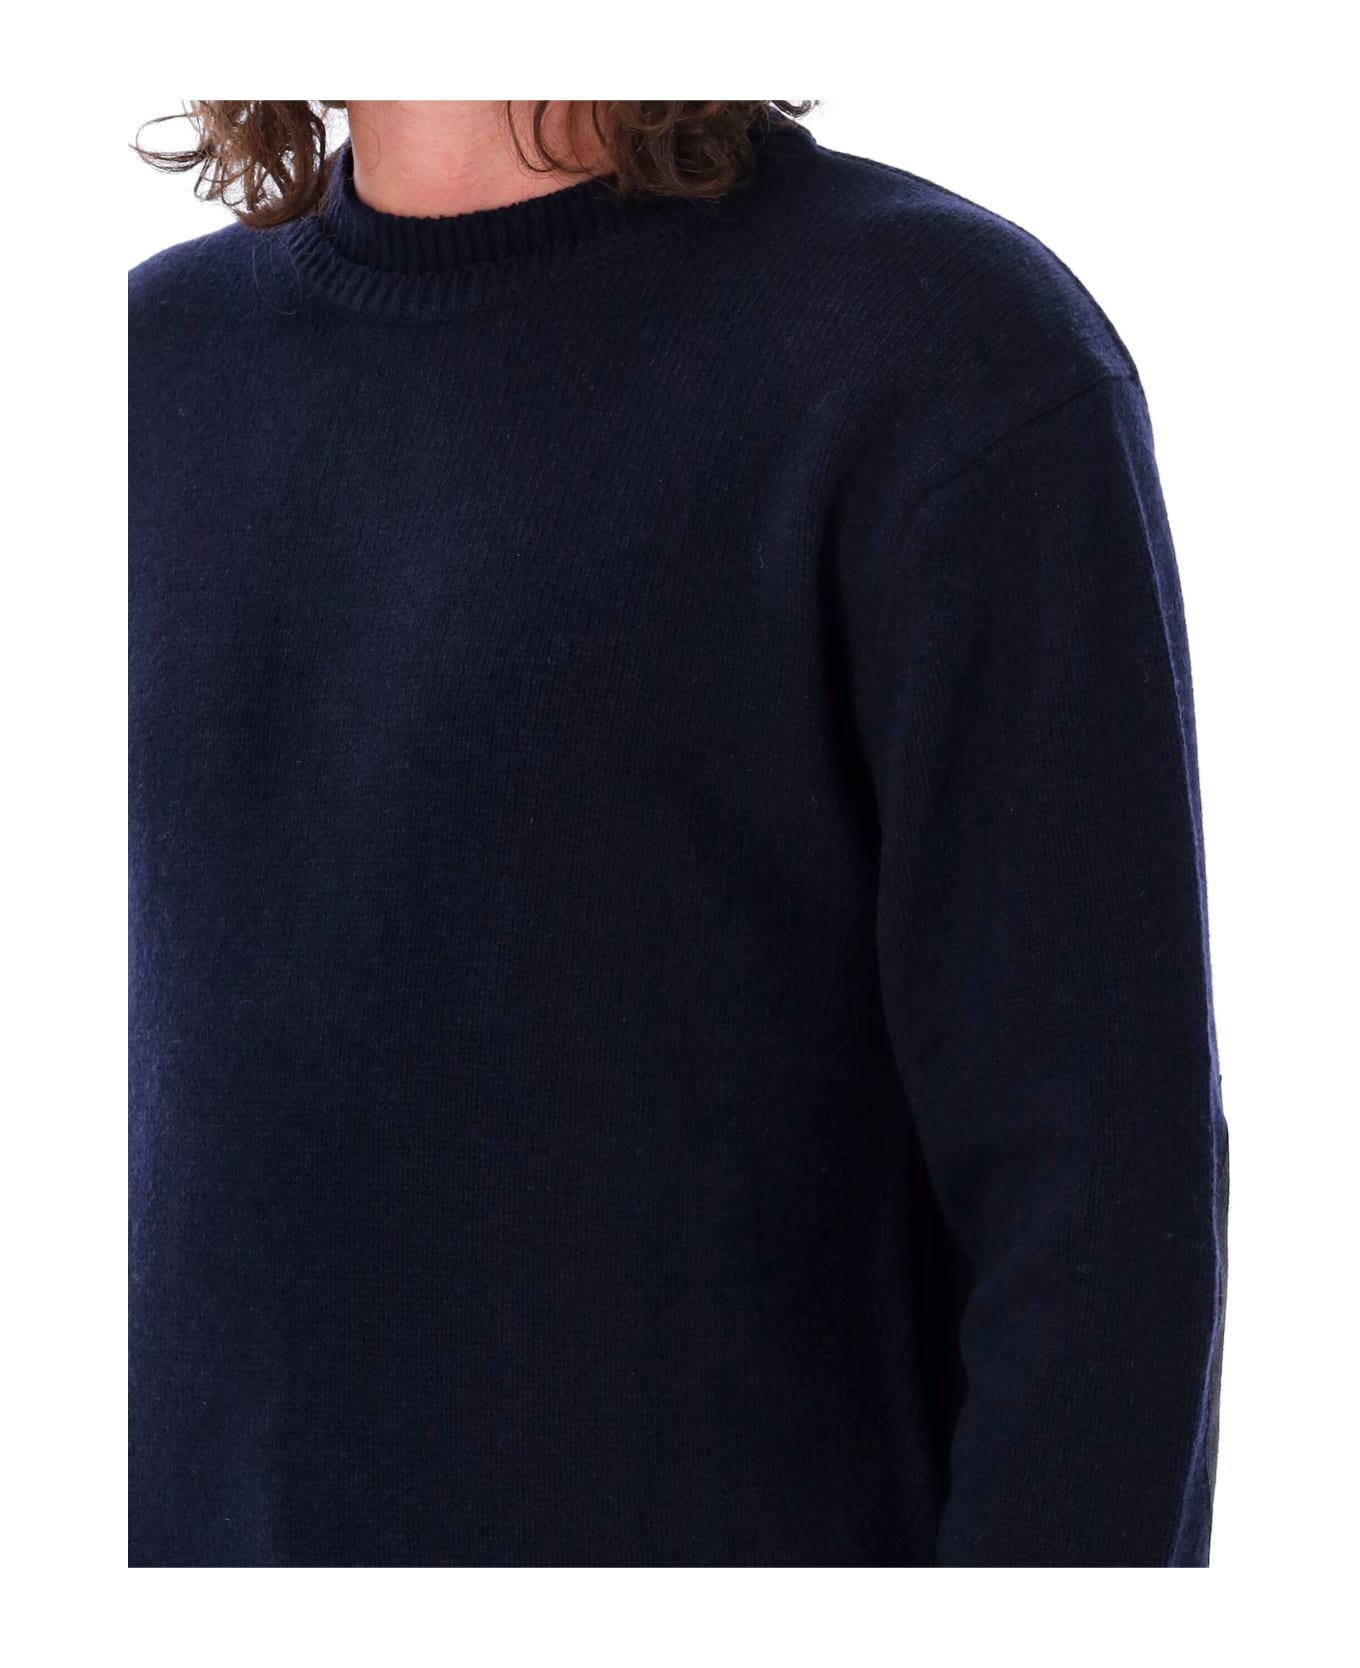 Maison Margiela Elbow Patches Sweater - Navy ニットウェア